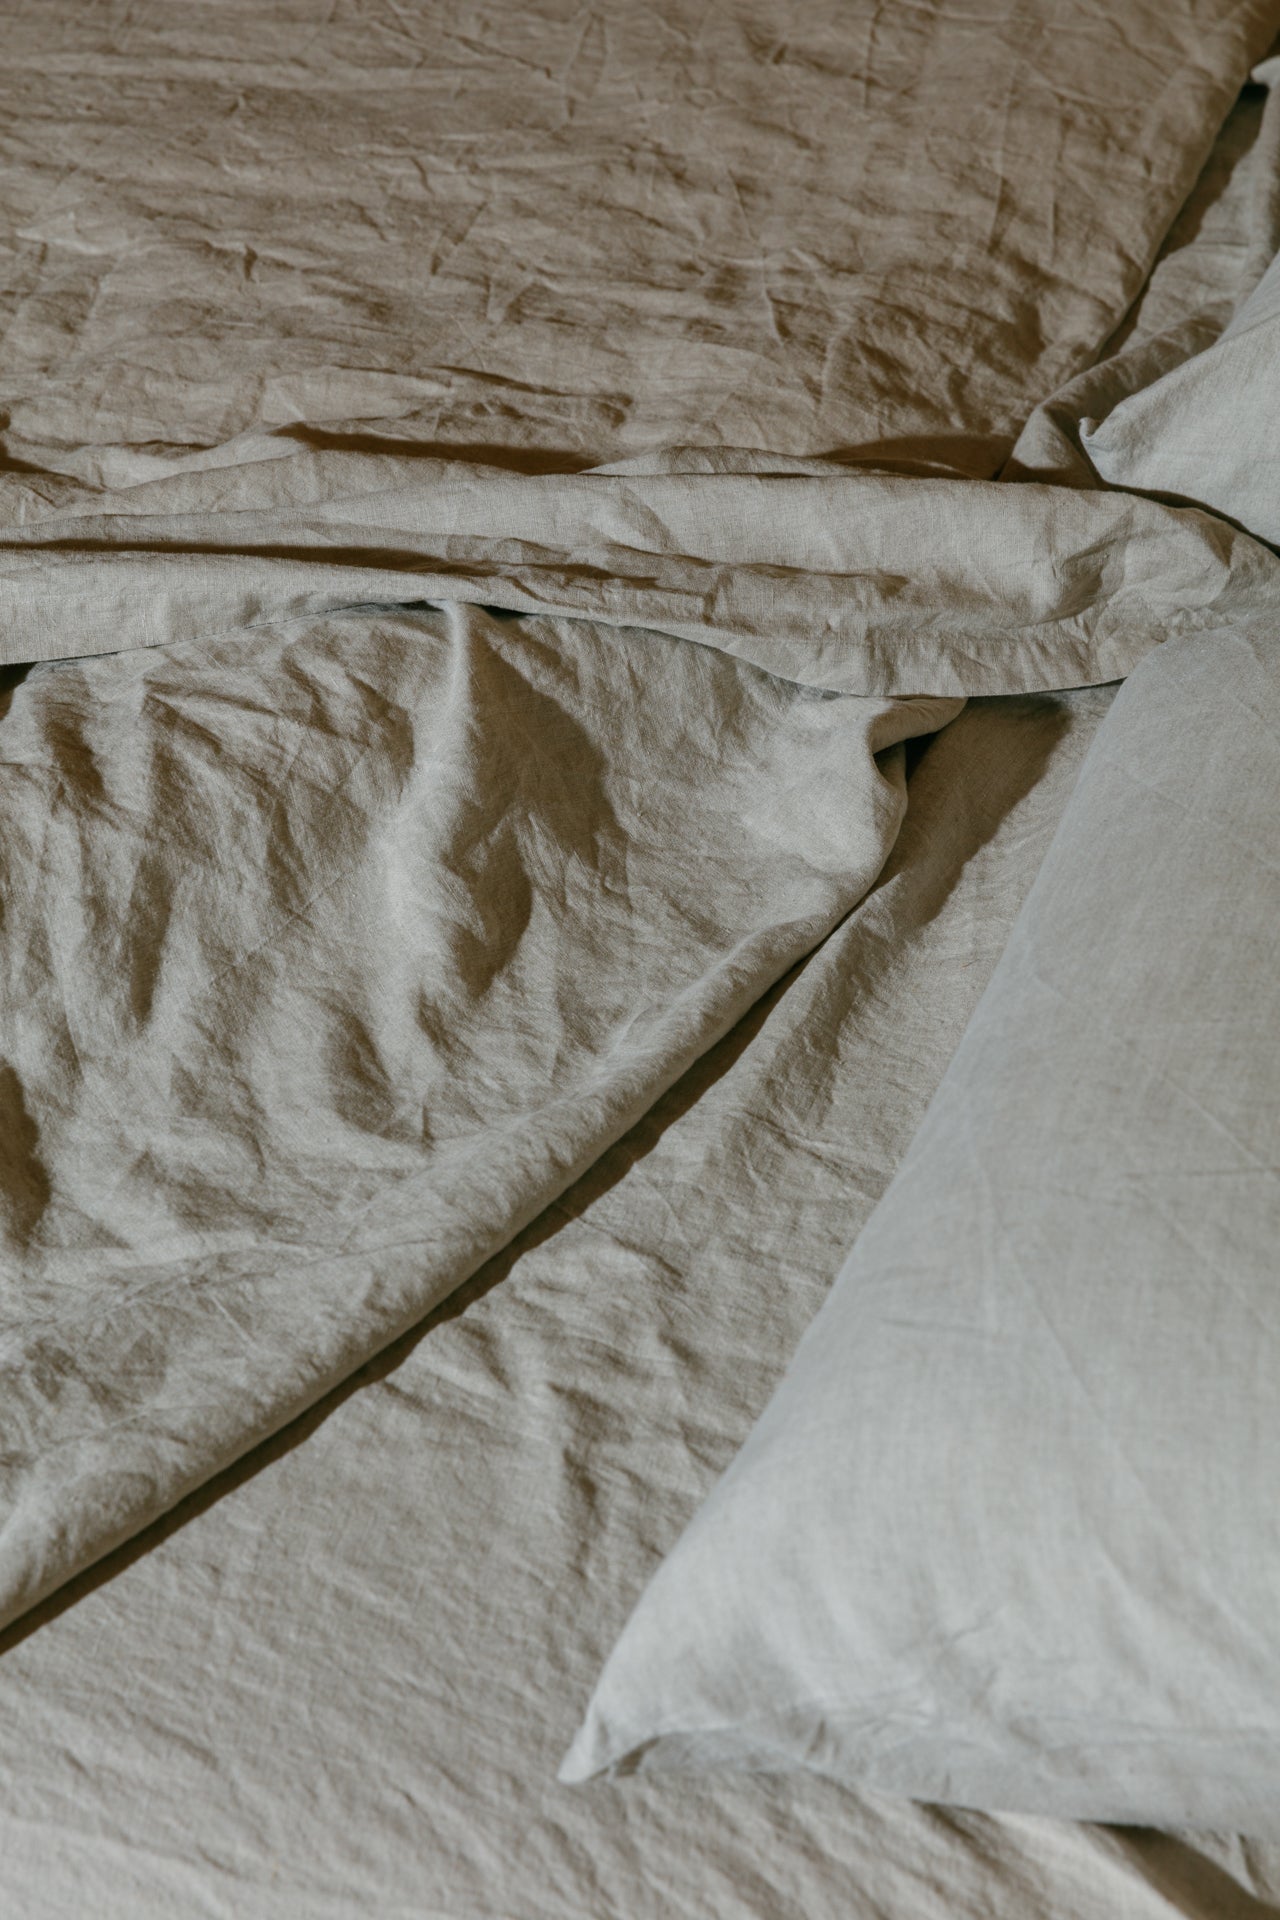 Hemp Linen Top Sheet - SLEEP GOOD